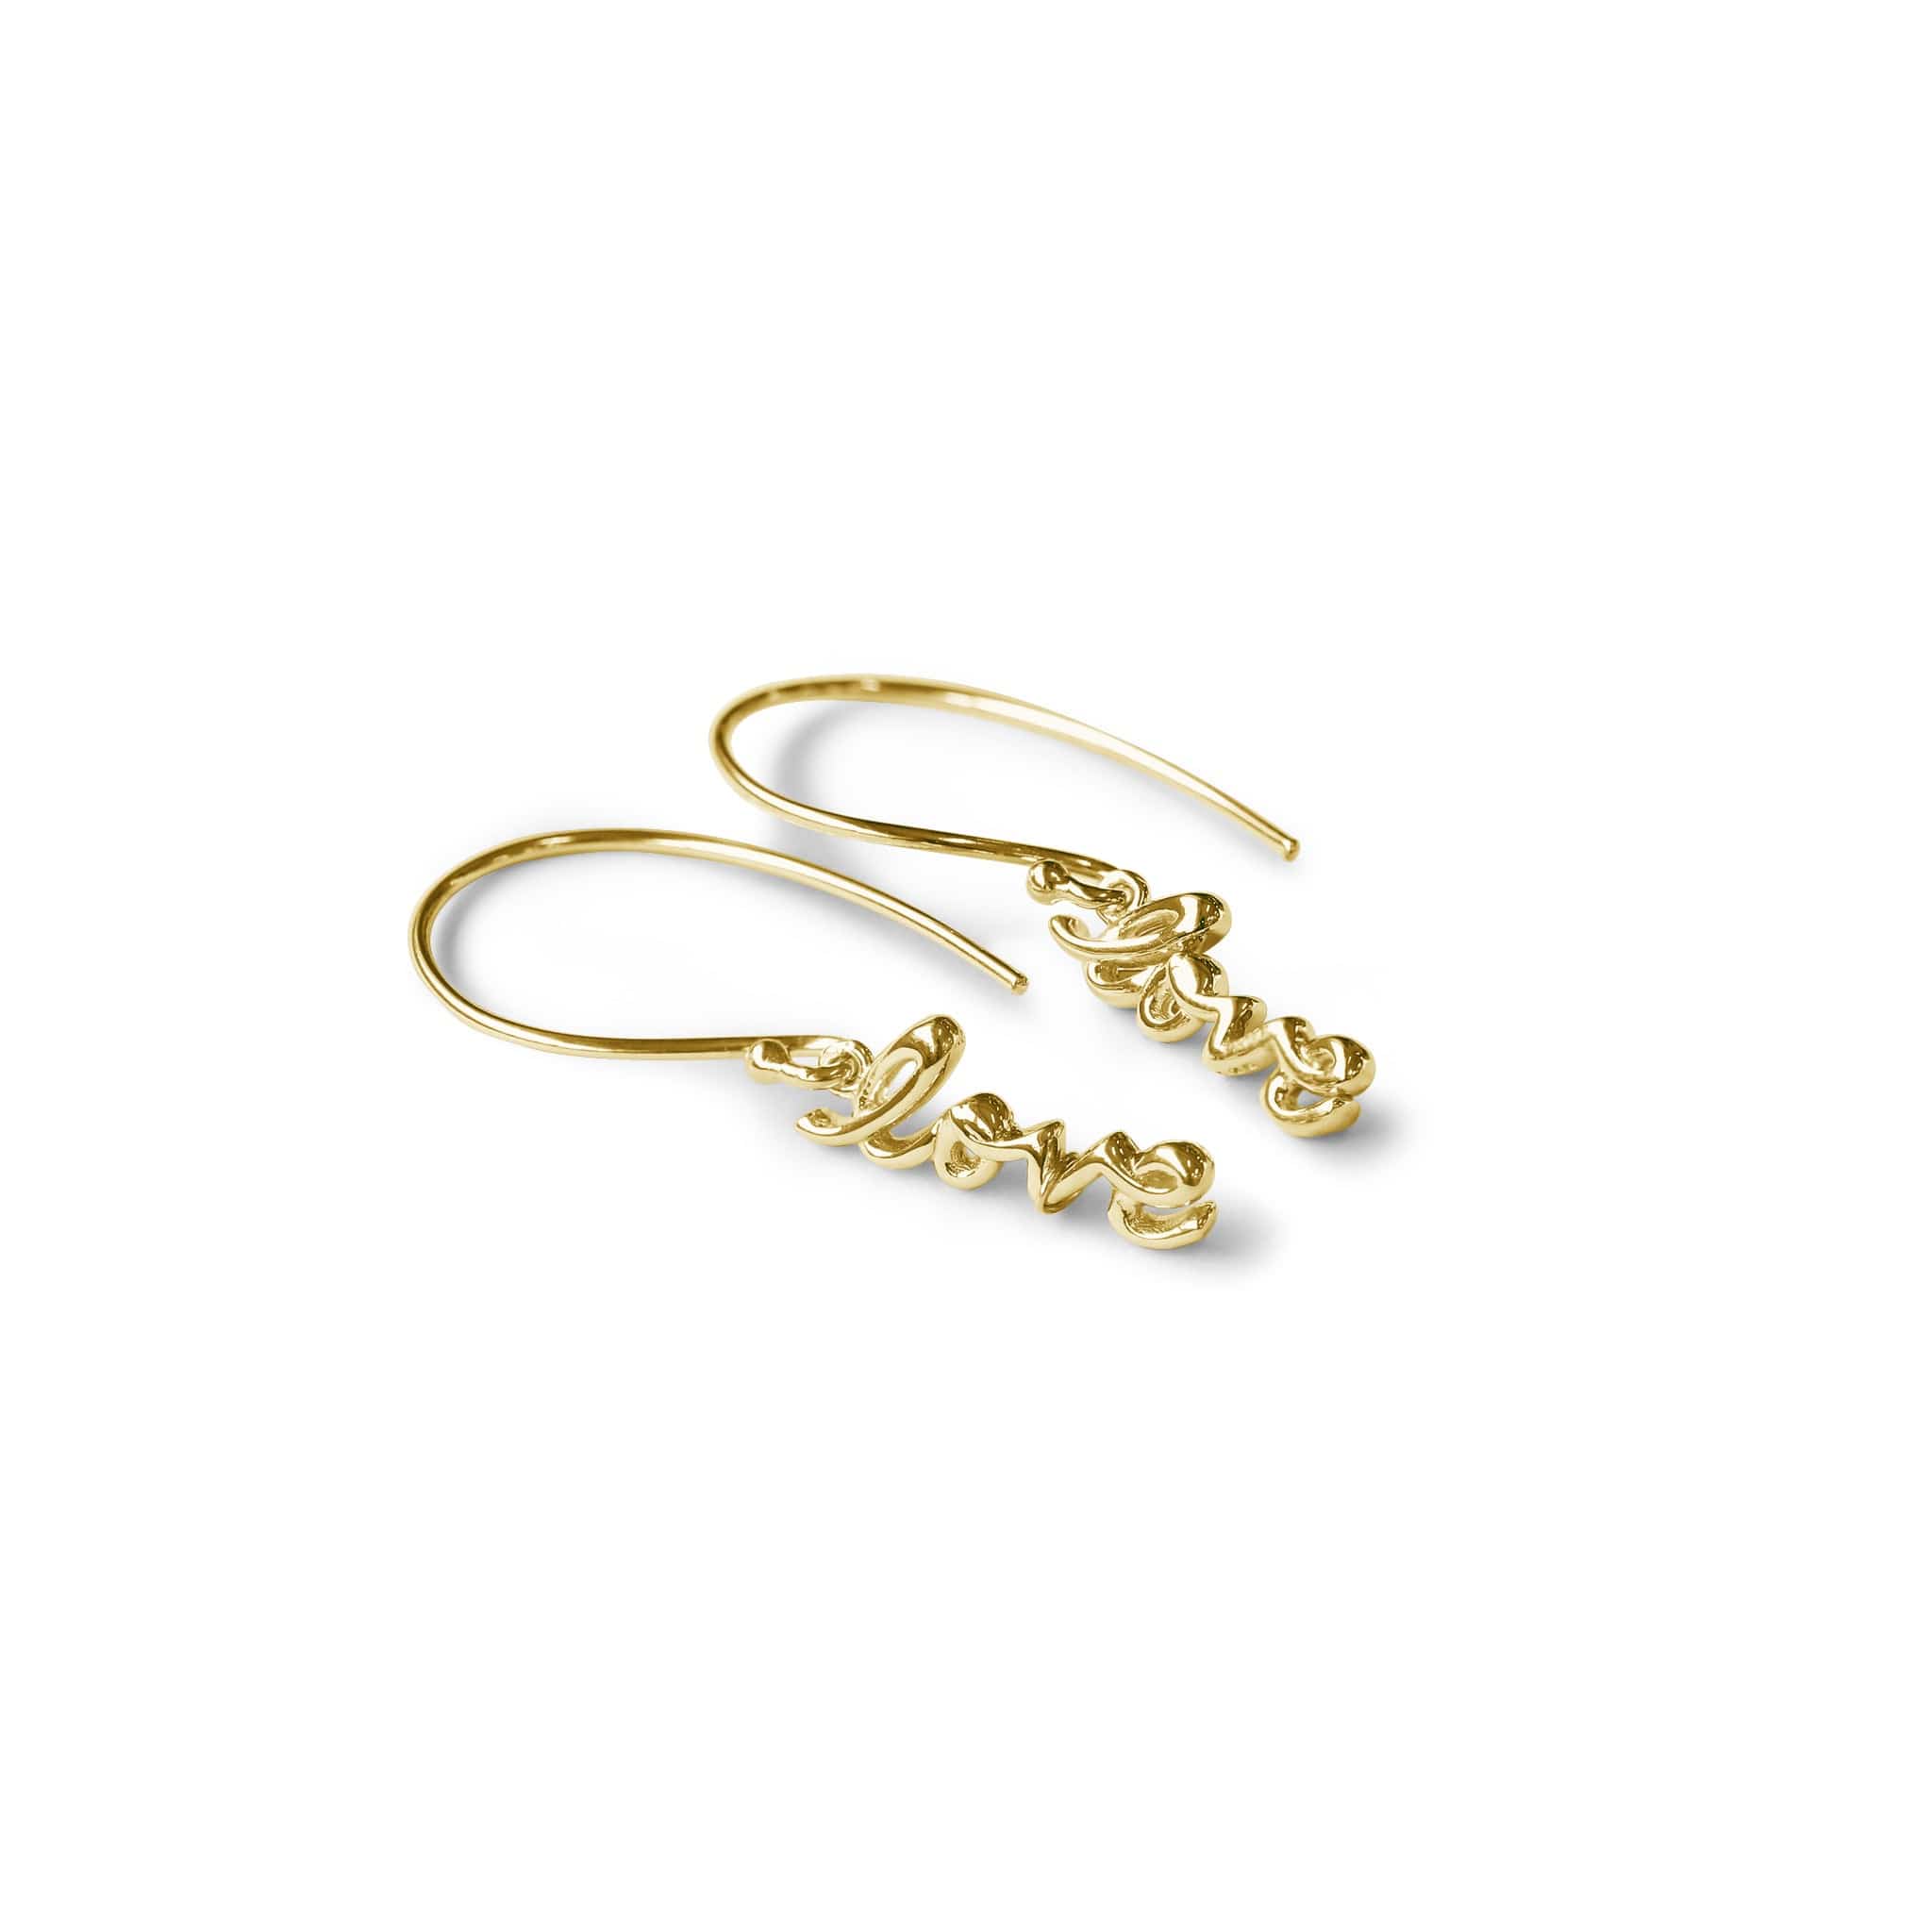 Boma Jewelry Earrings 14K Gold Vermeil Scripted Love Dangles Earrings